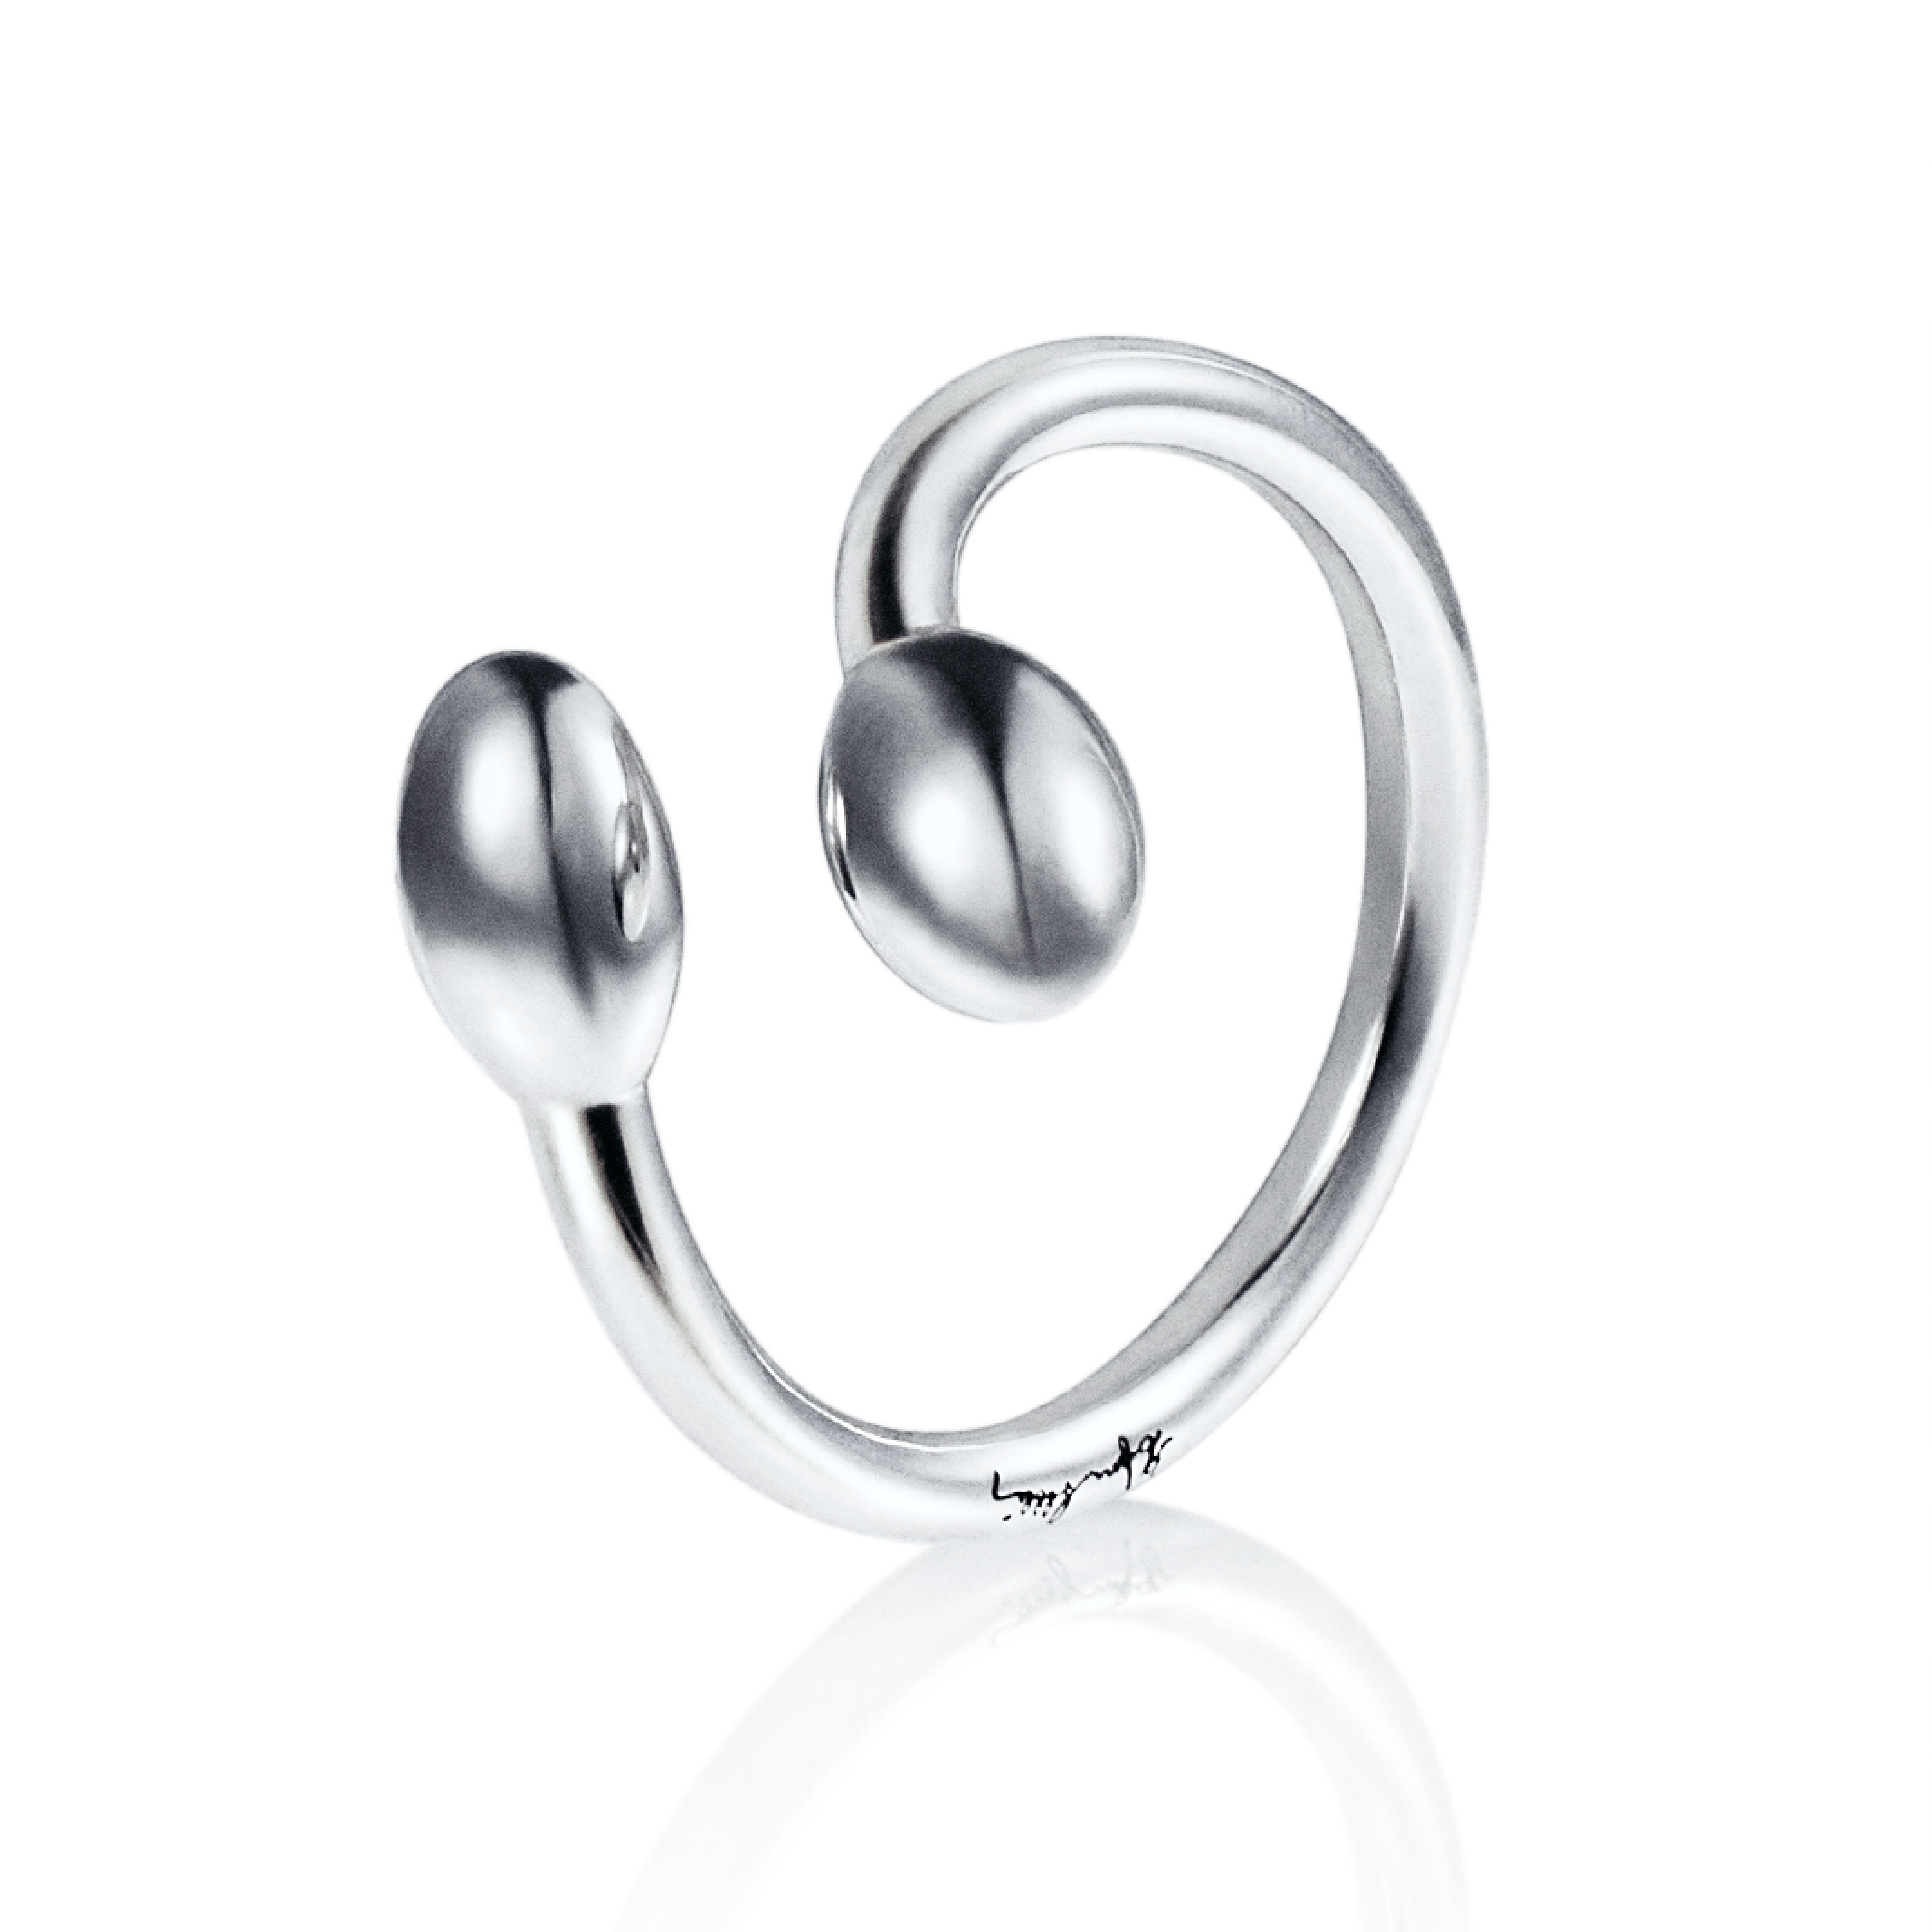 Efva Attling Love Bead Twin Ring - Silver 17.00 MM - SILVER